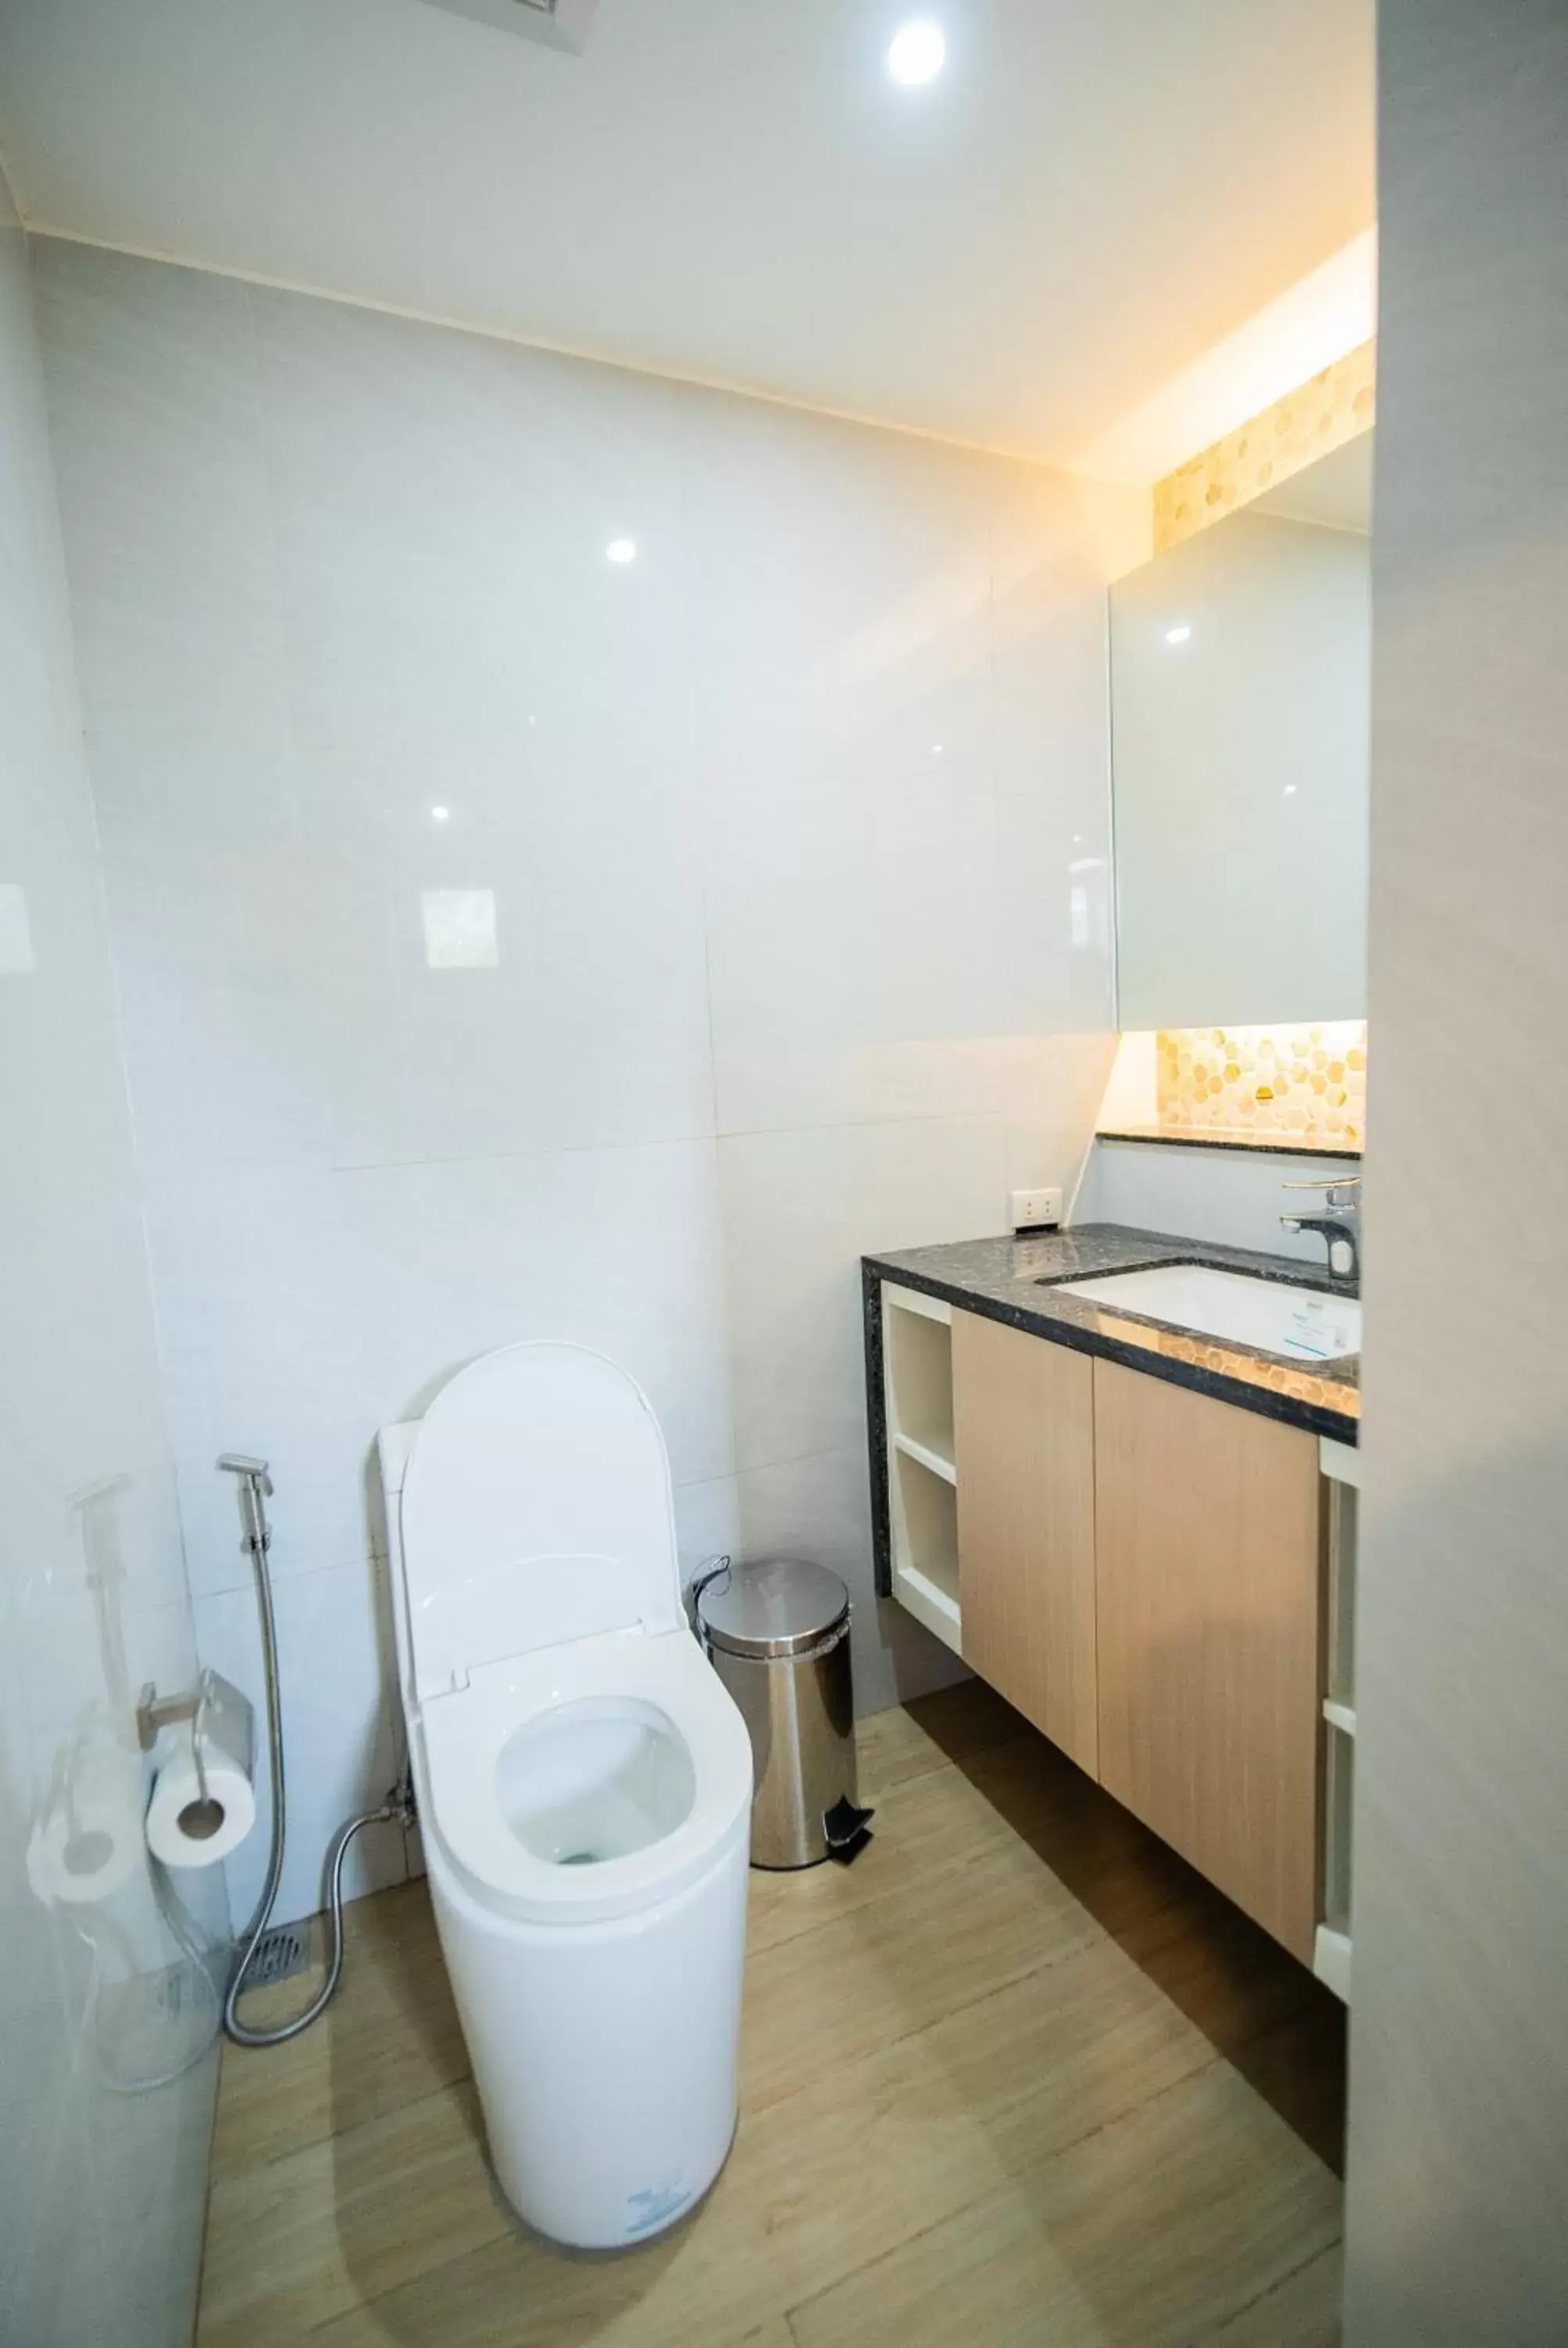 Toilet, Bathroom in KLM Condotel